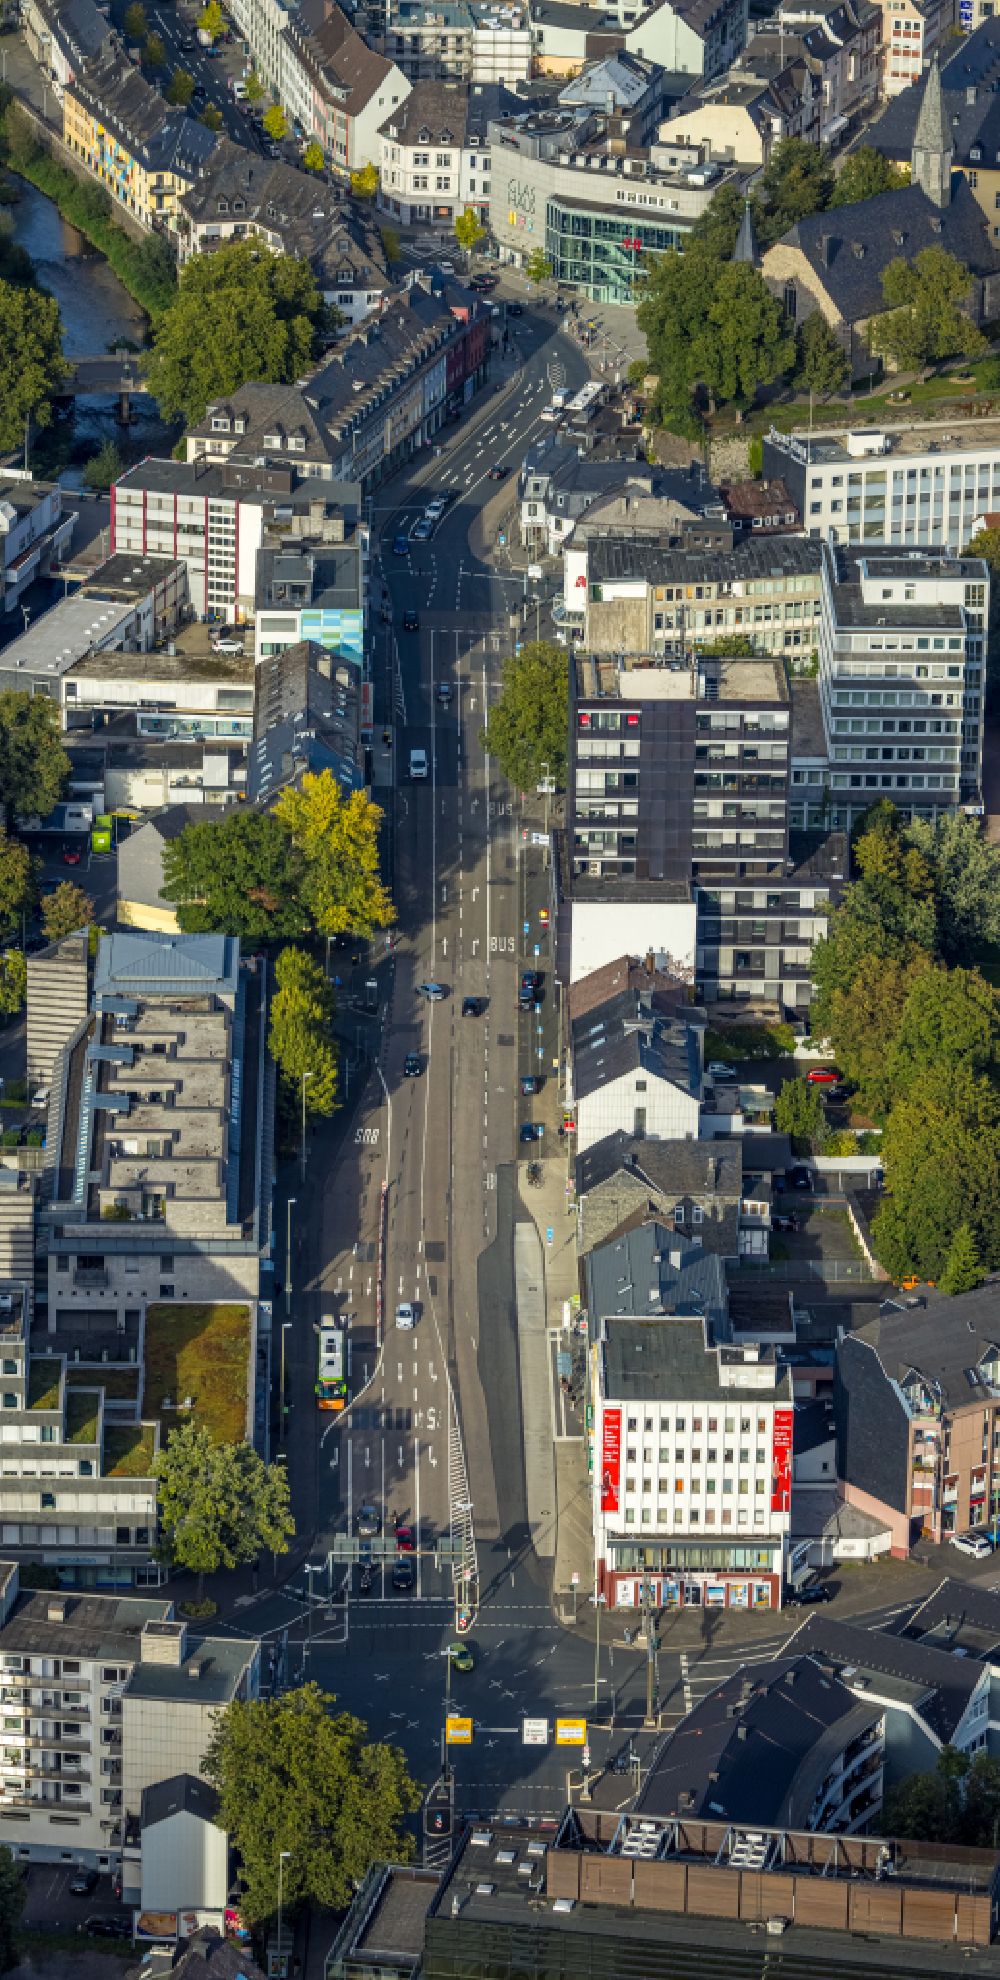 Siegen aus der Vogelperspektive: Verlauf der Straßenkreuzung der Koblenzer Straße und Berliner Straße in Siegen im Bundesland Nordrhein-Westfalen